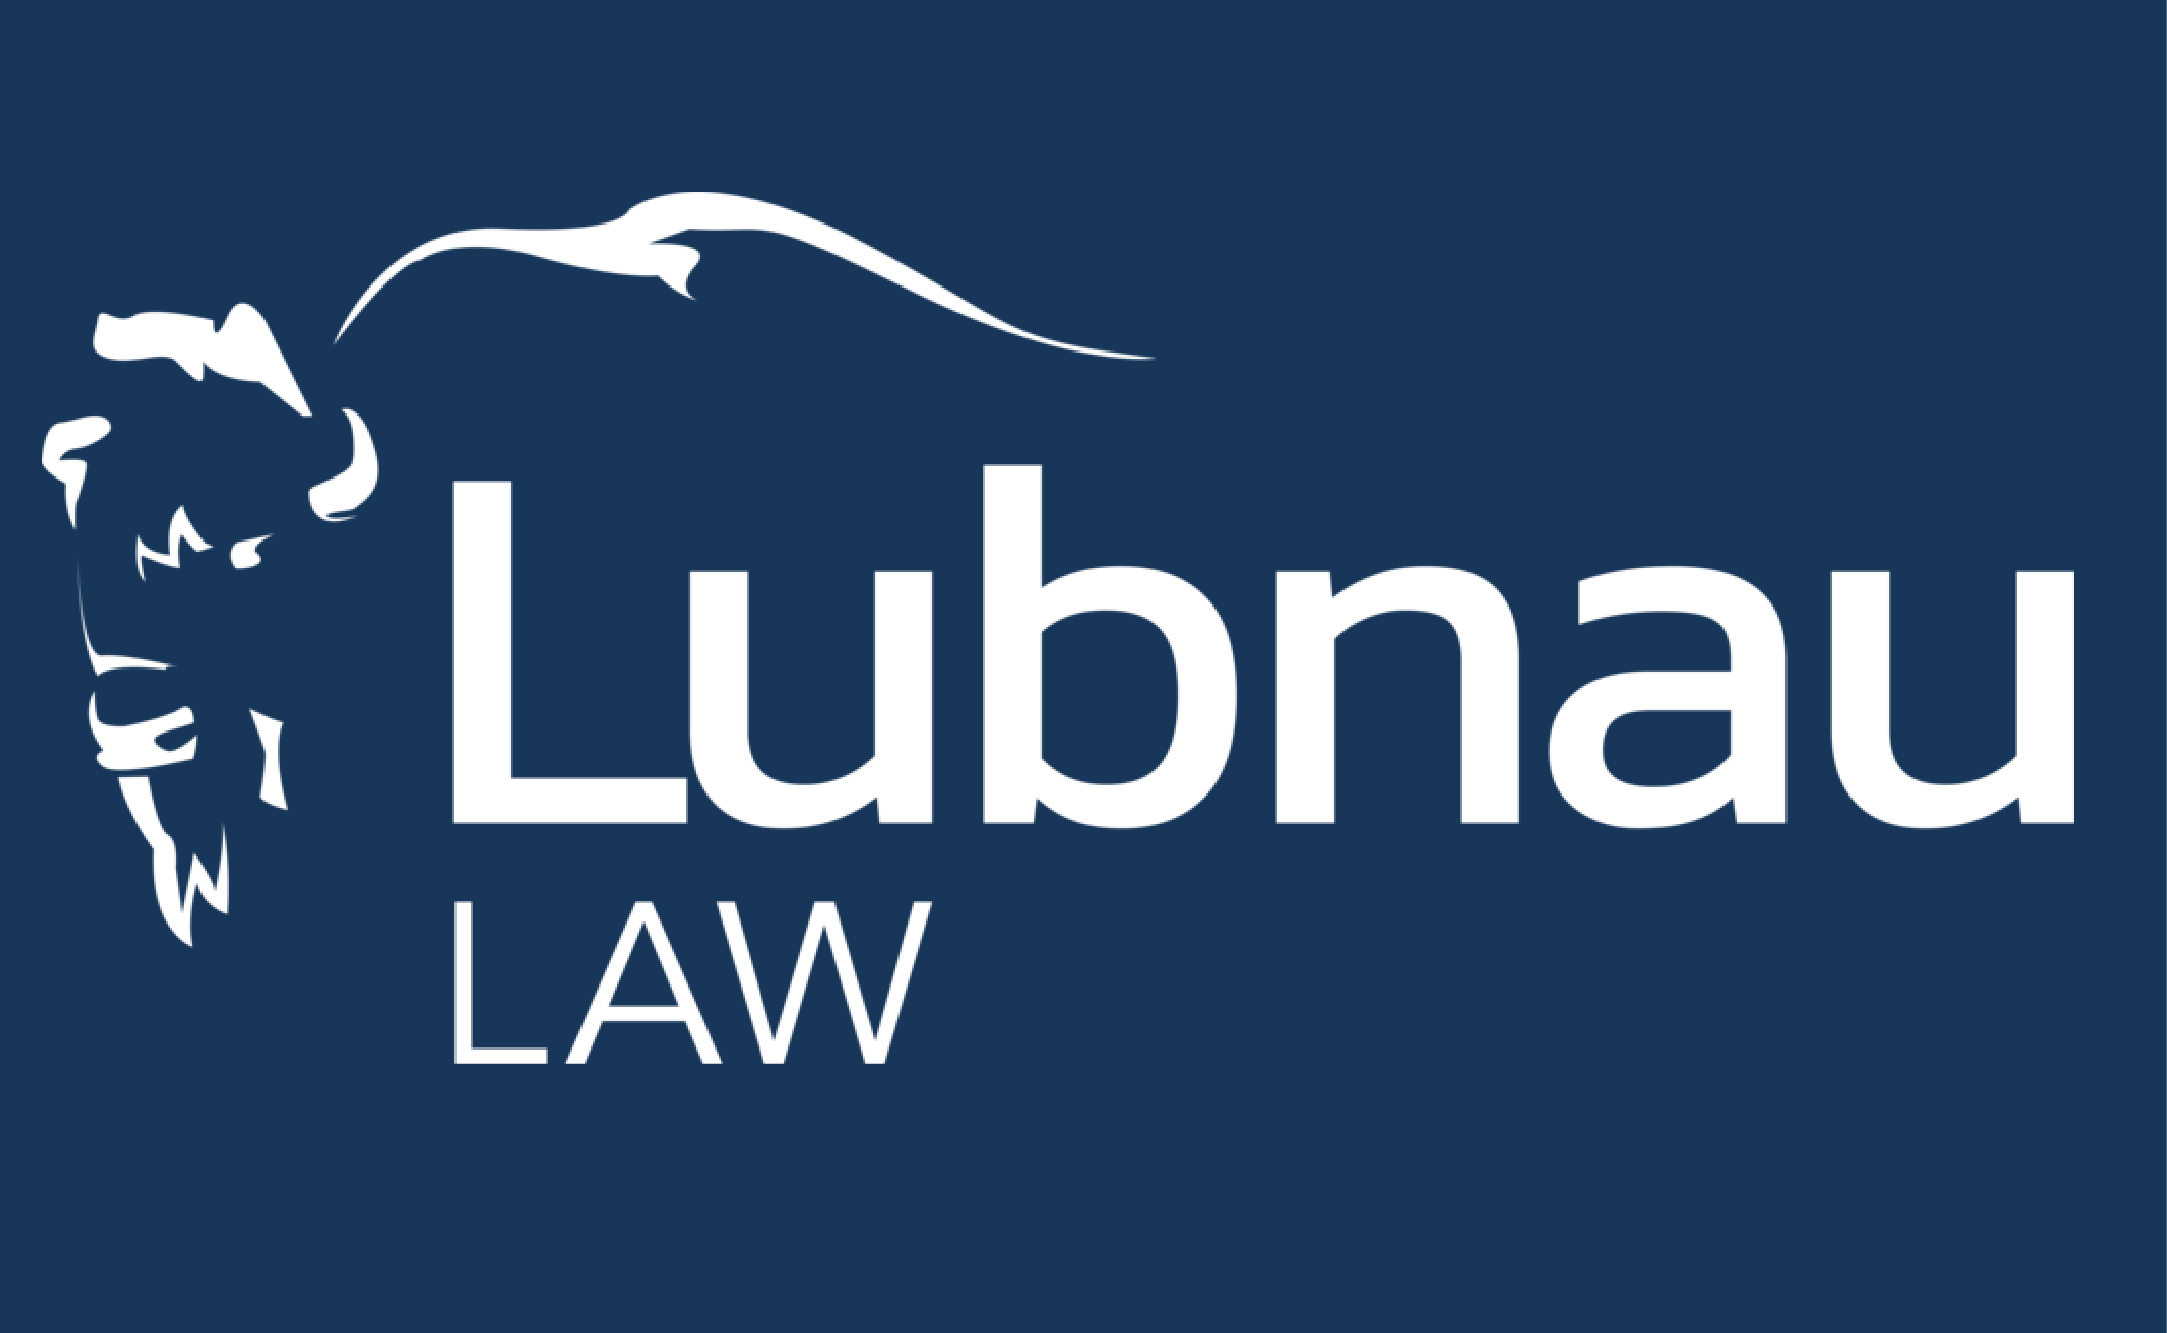 B. Lubnau Law (Presenting)